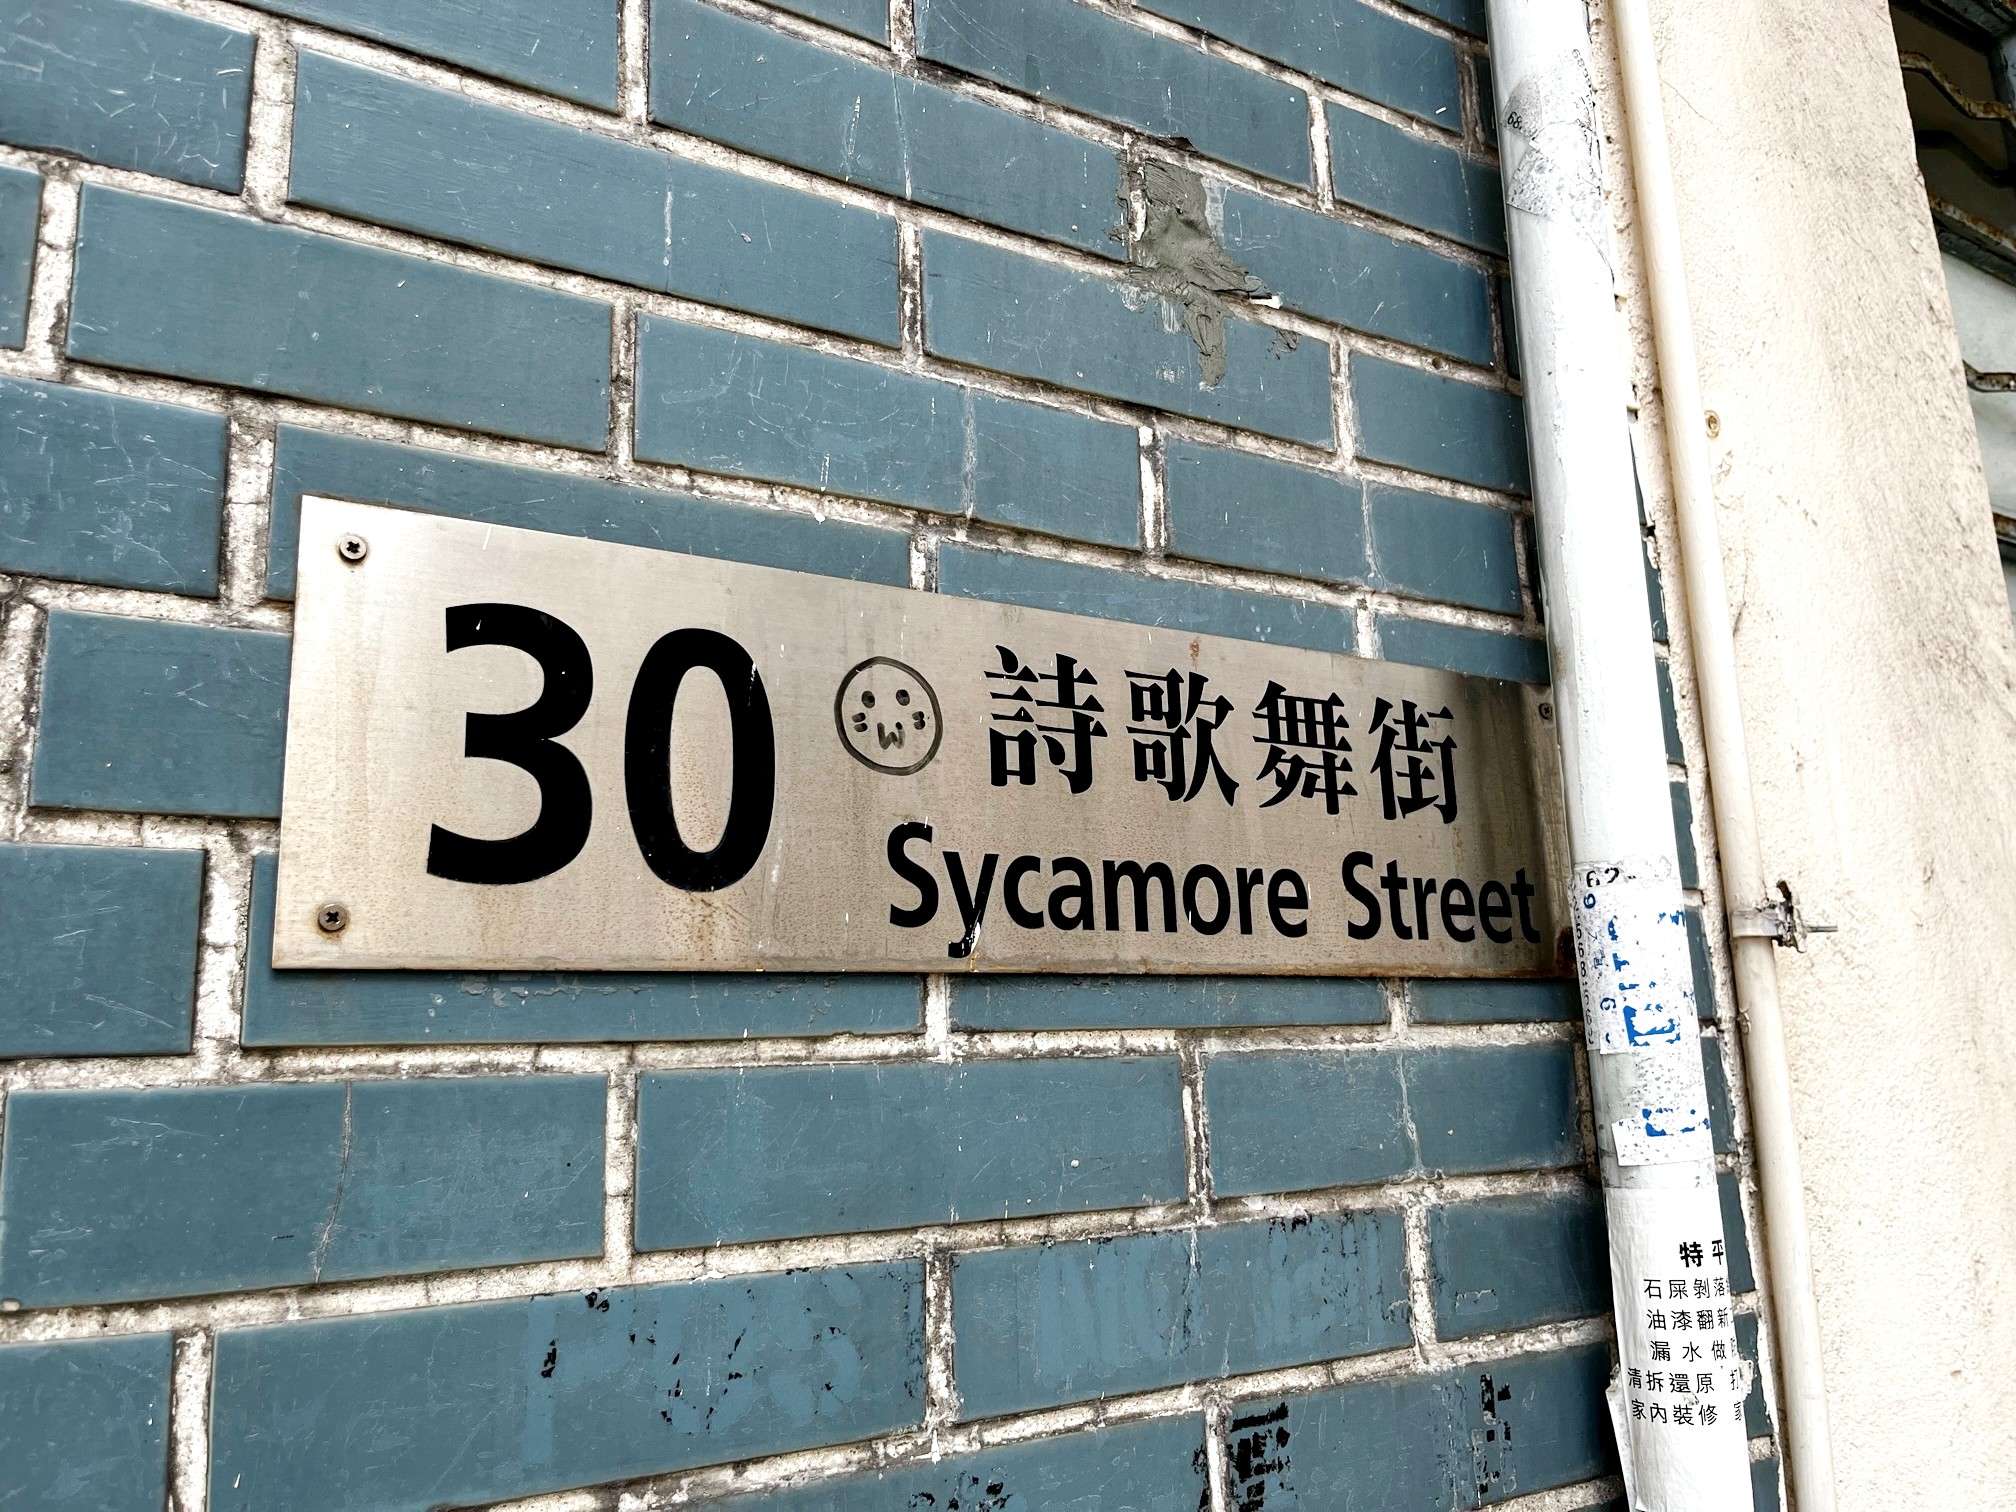 如果將Sycamore Street直譯作「無花果街」，傳統華人會認為不吉利。